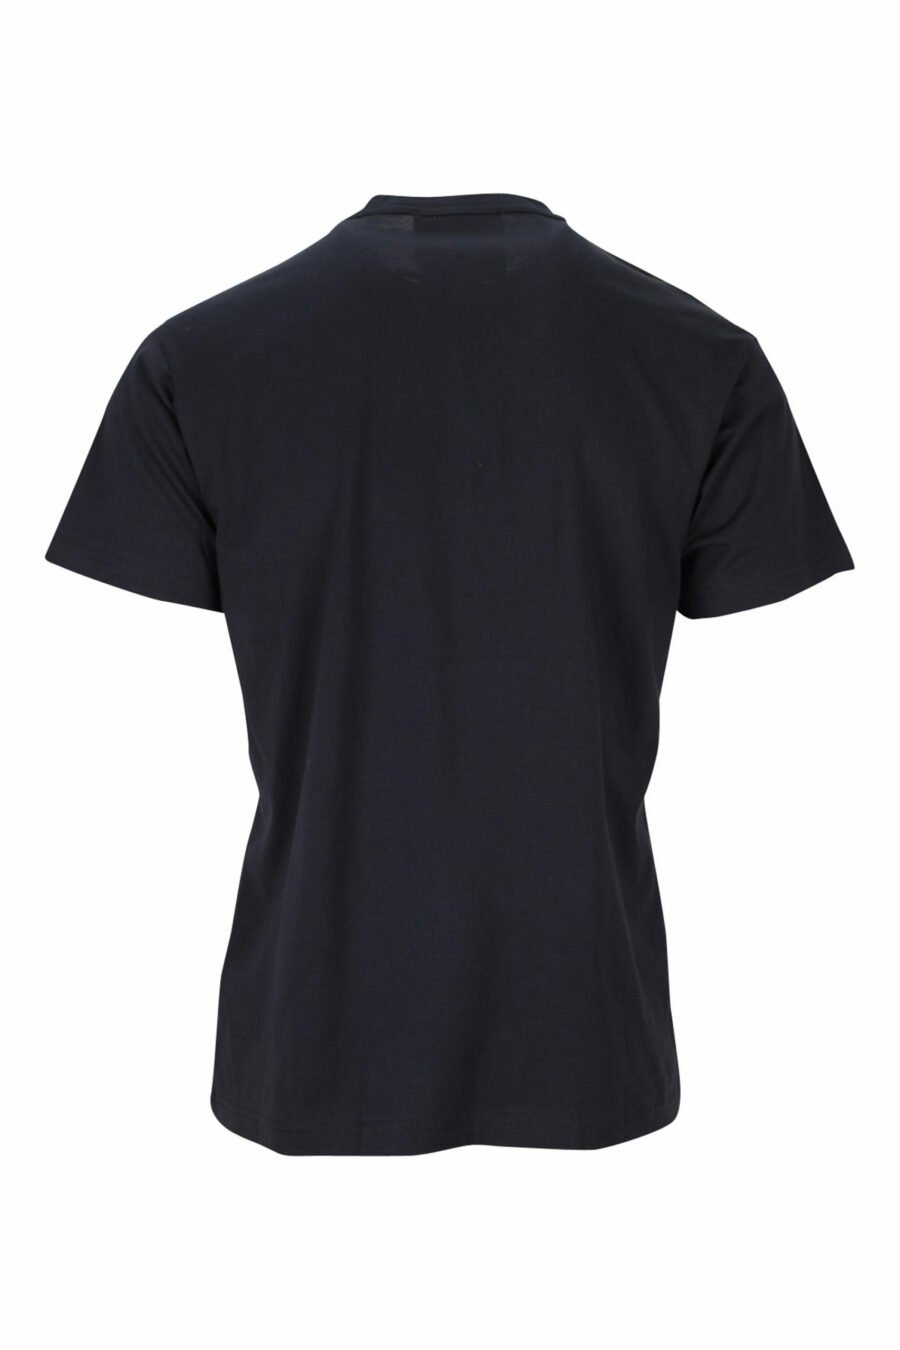 T-shirt noir avec maxilogo chien rouge - 8052019475180 1 scaled